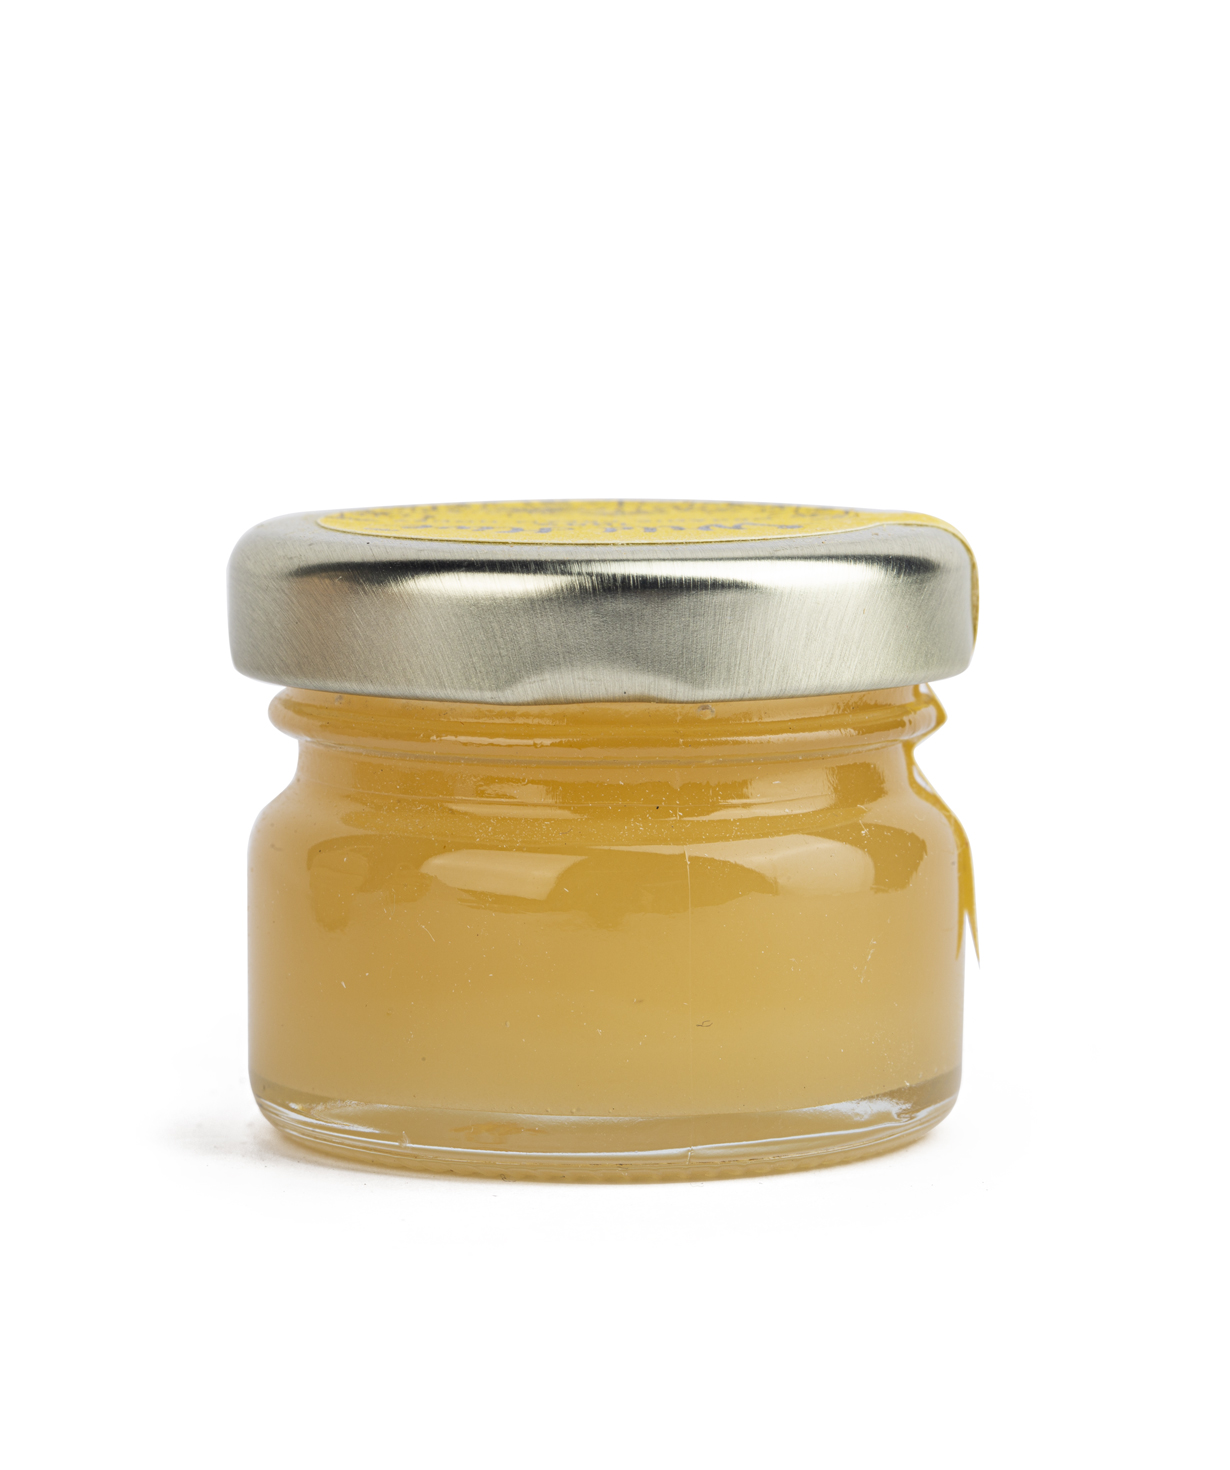 Cream-honey `Wild Hive` 100% Certified Organic  30g